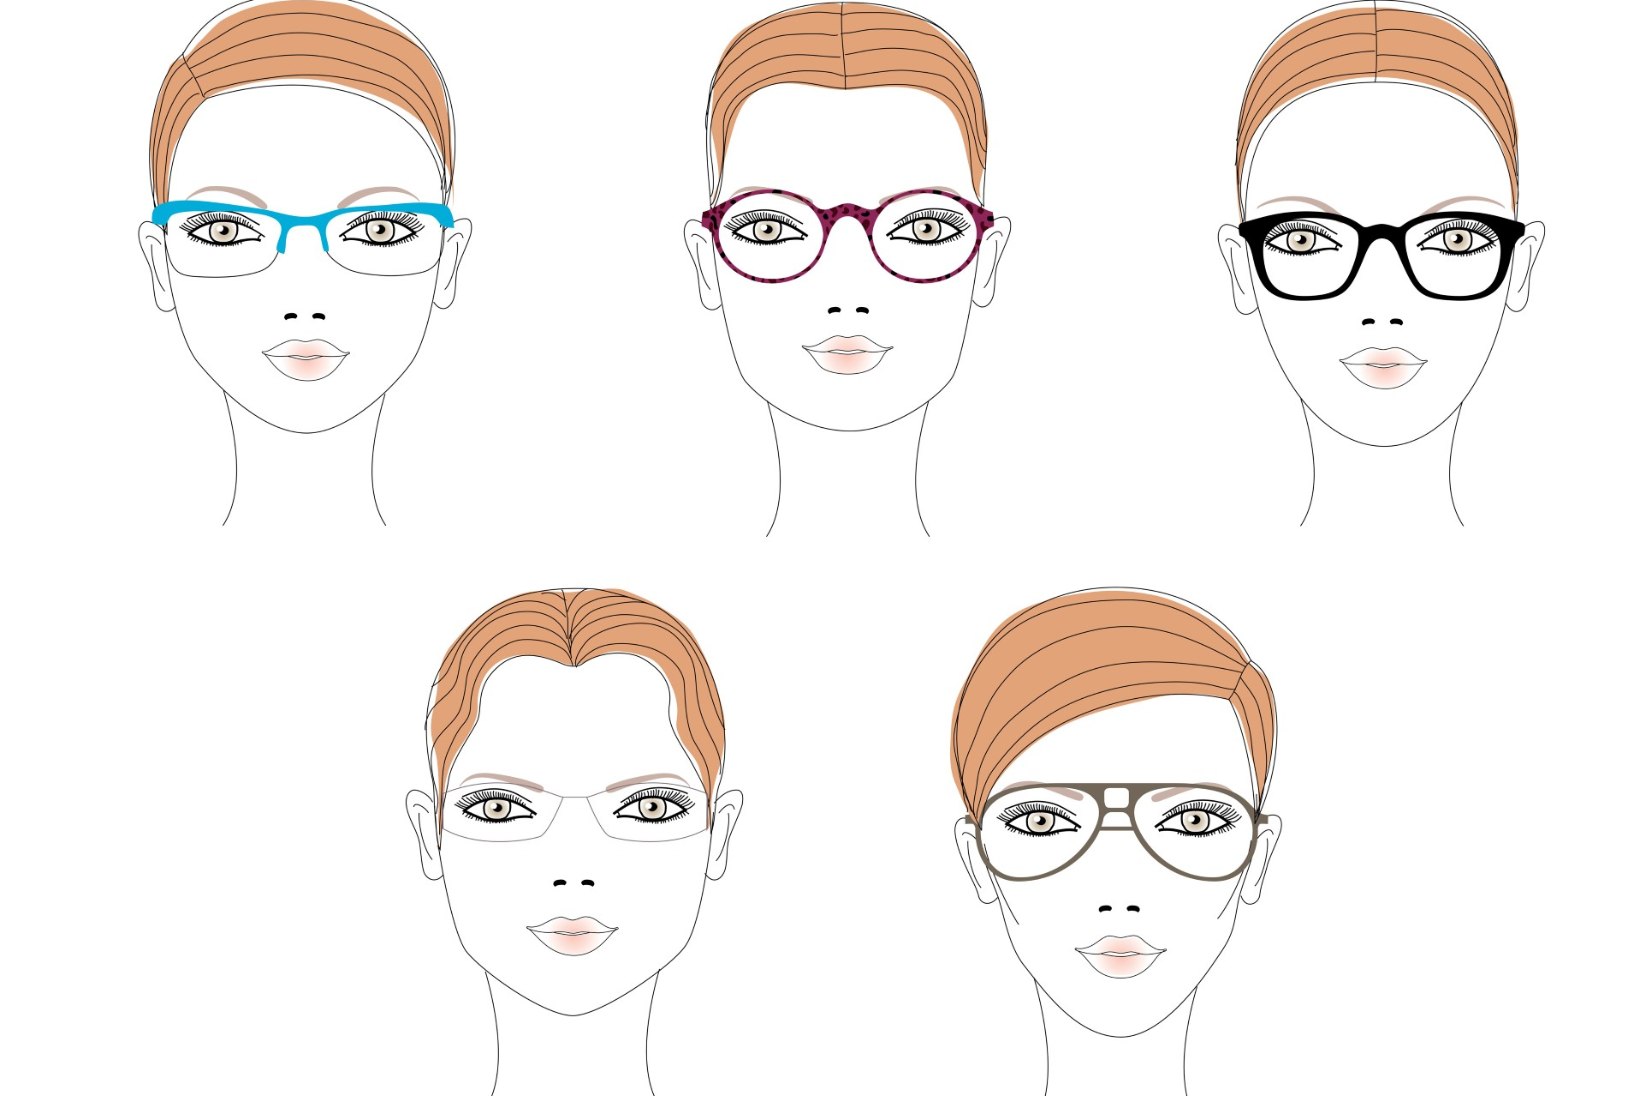 PUUST JA PUNASEKS! Kuidas leida enda näokujuga kõige paremini sobivad prillid?